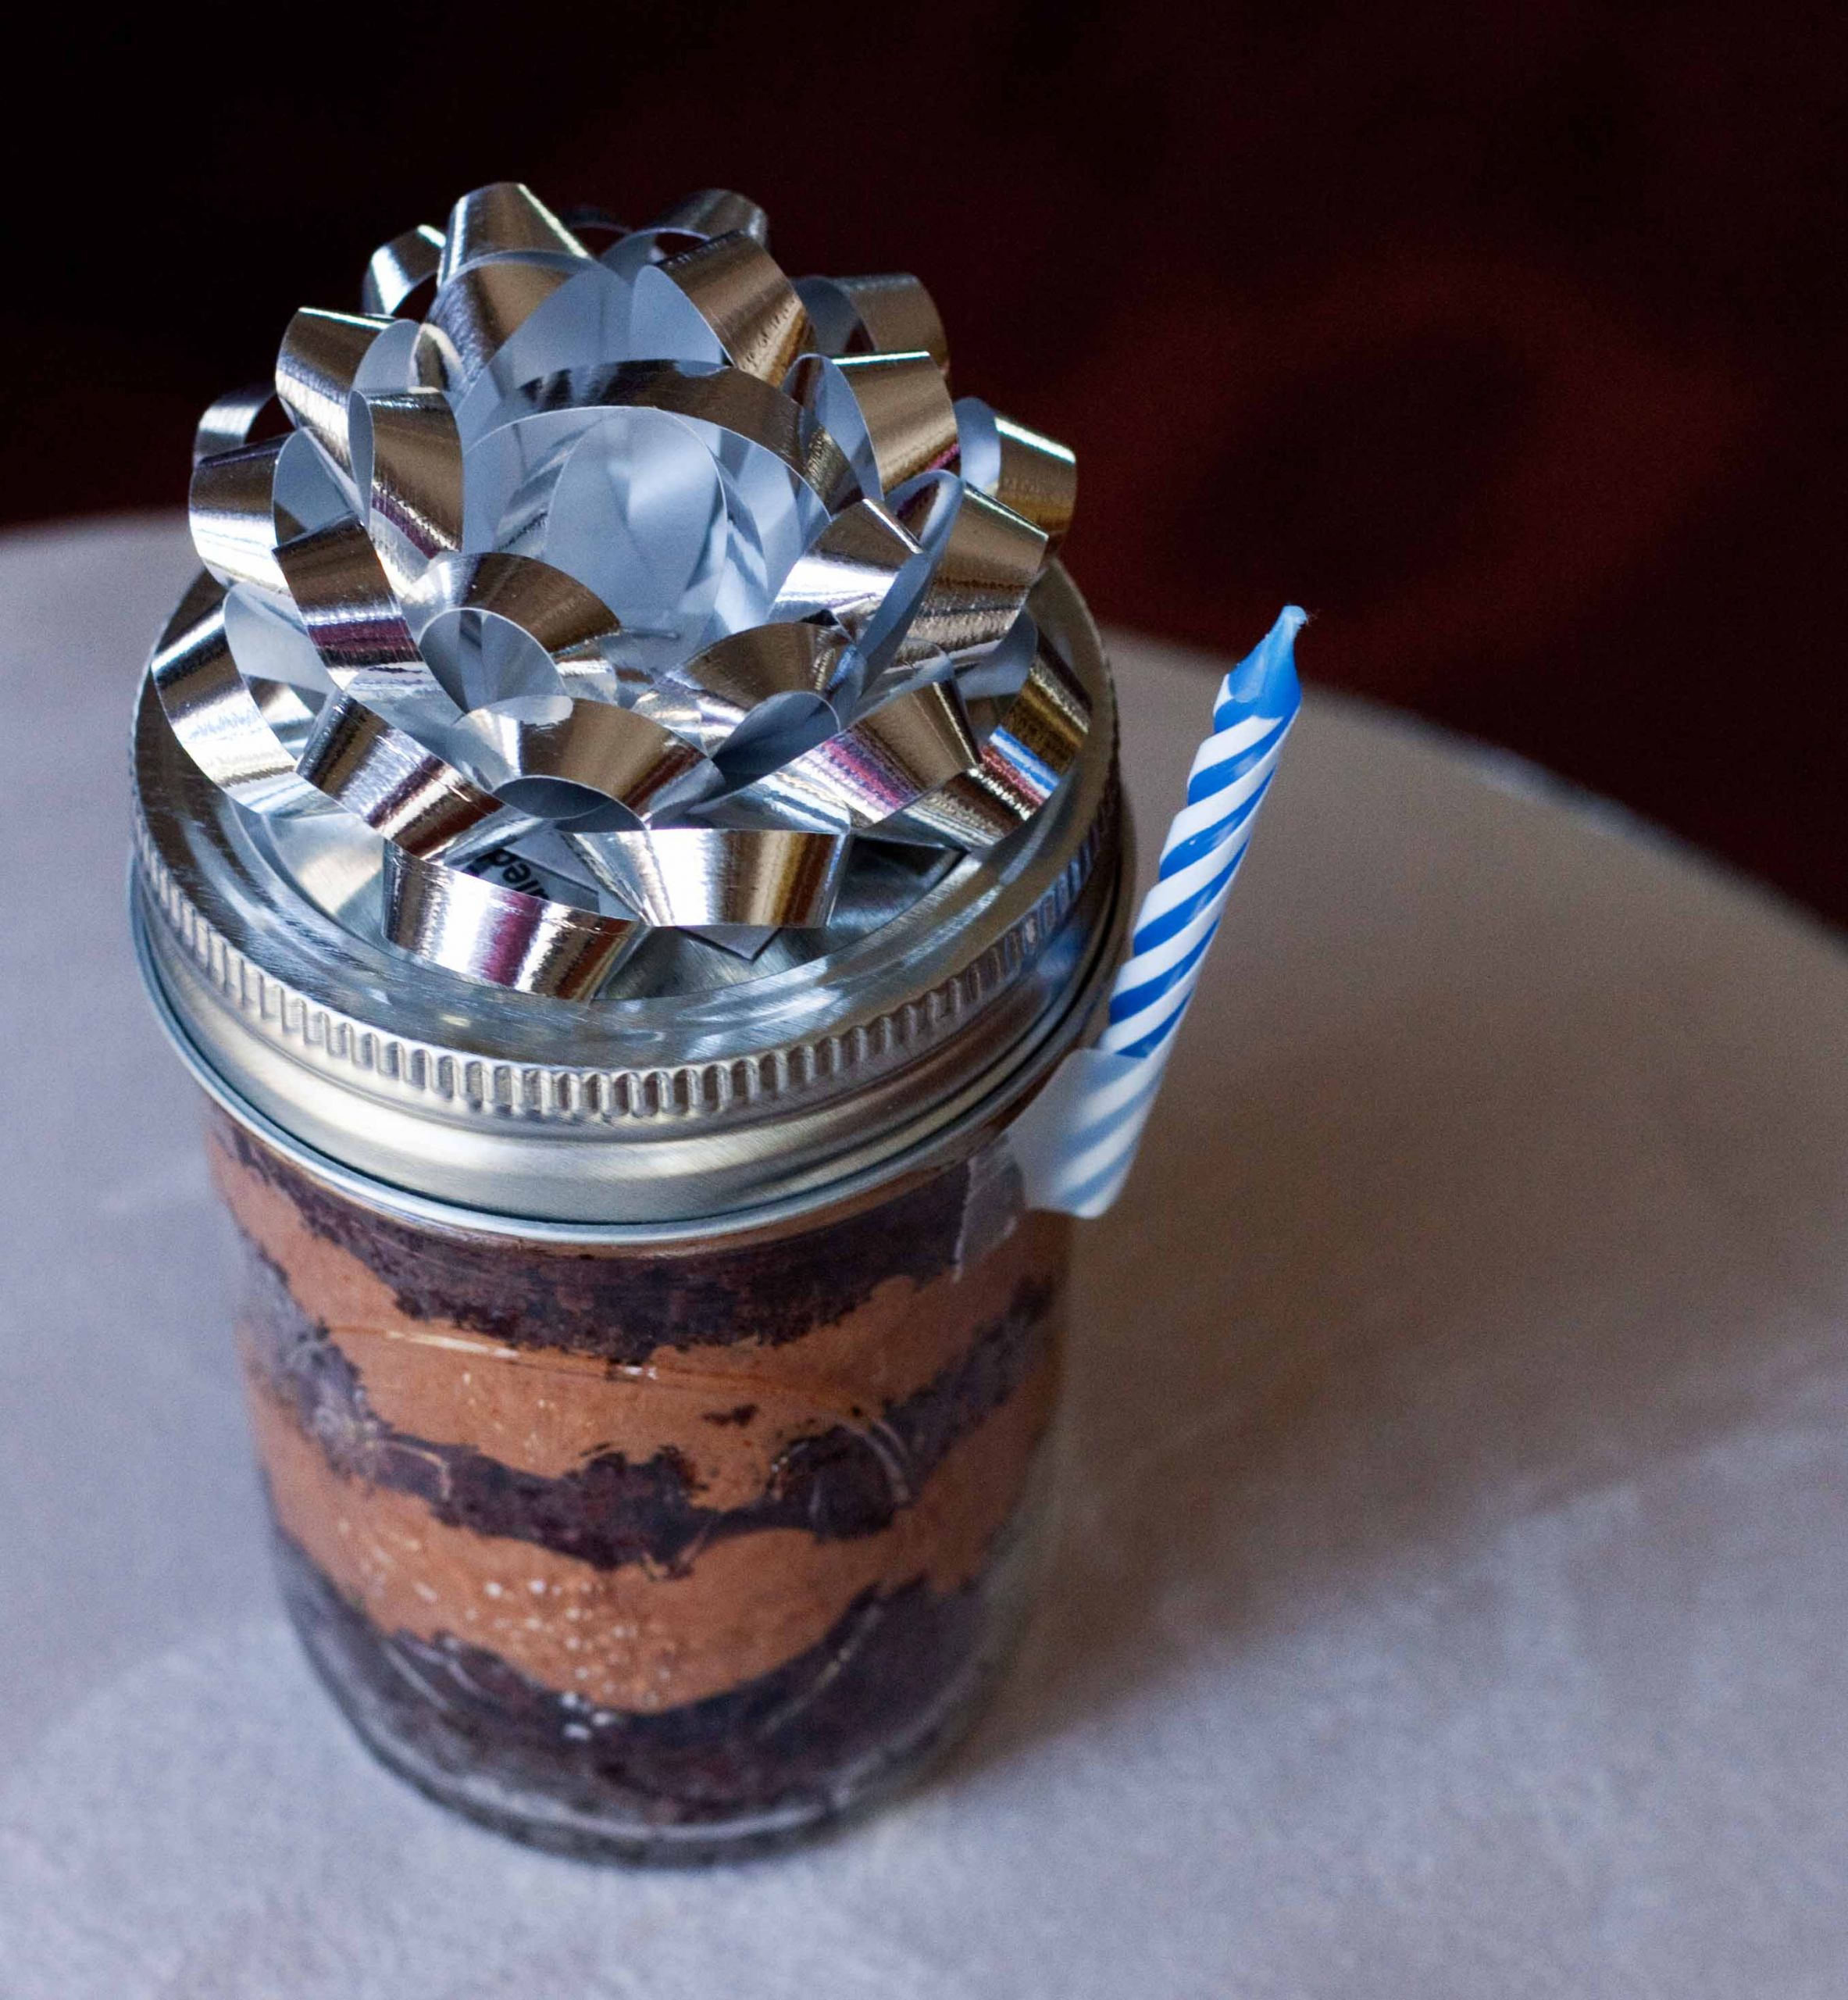 Birthday Cake In A Jar
 Birthday Cake in a Jar